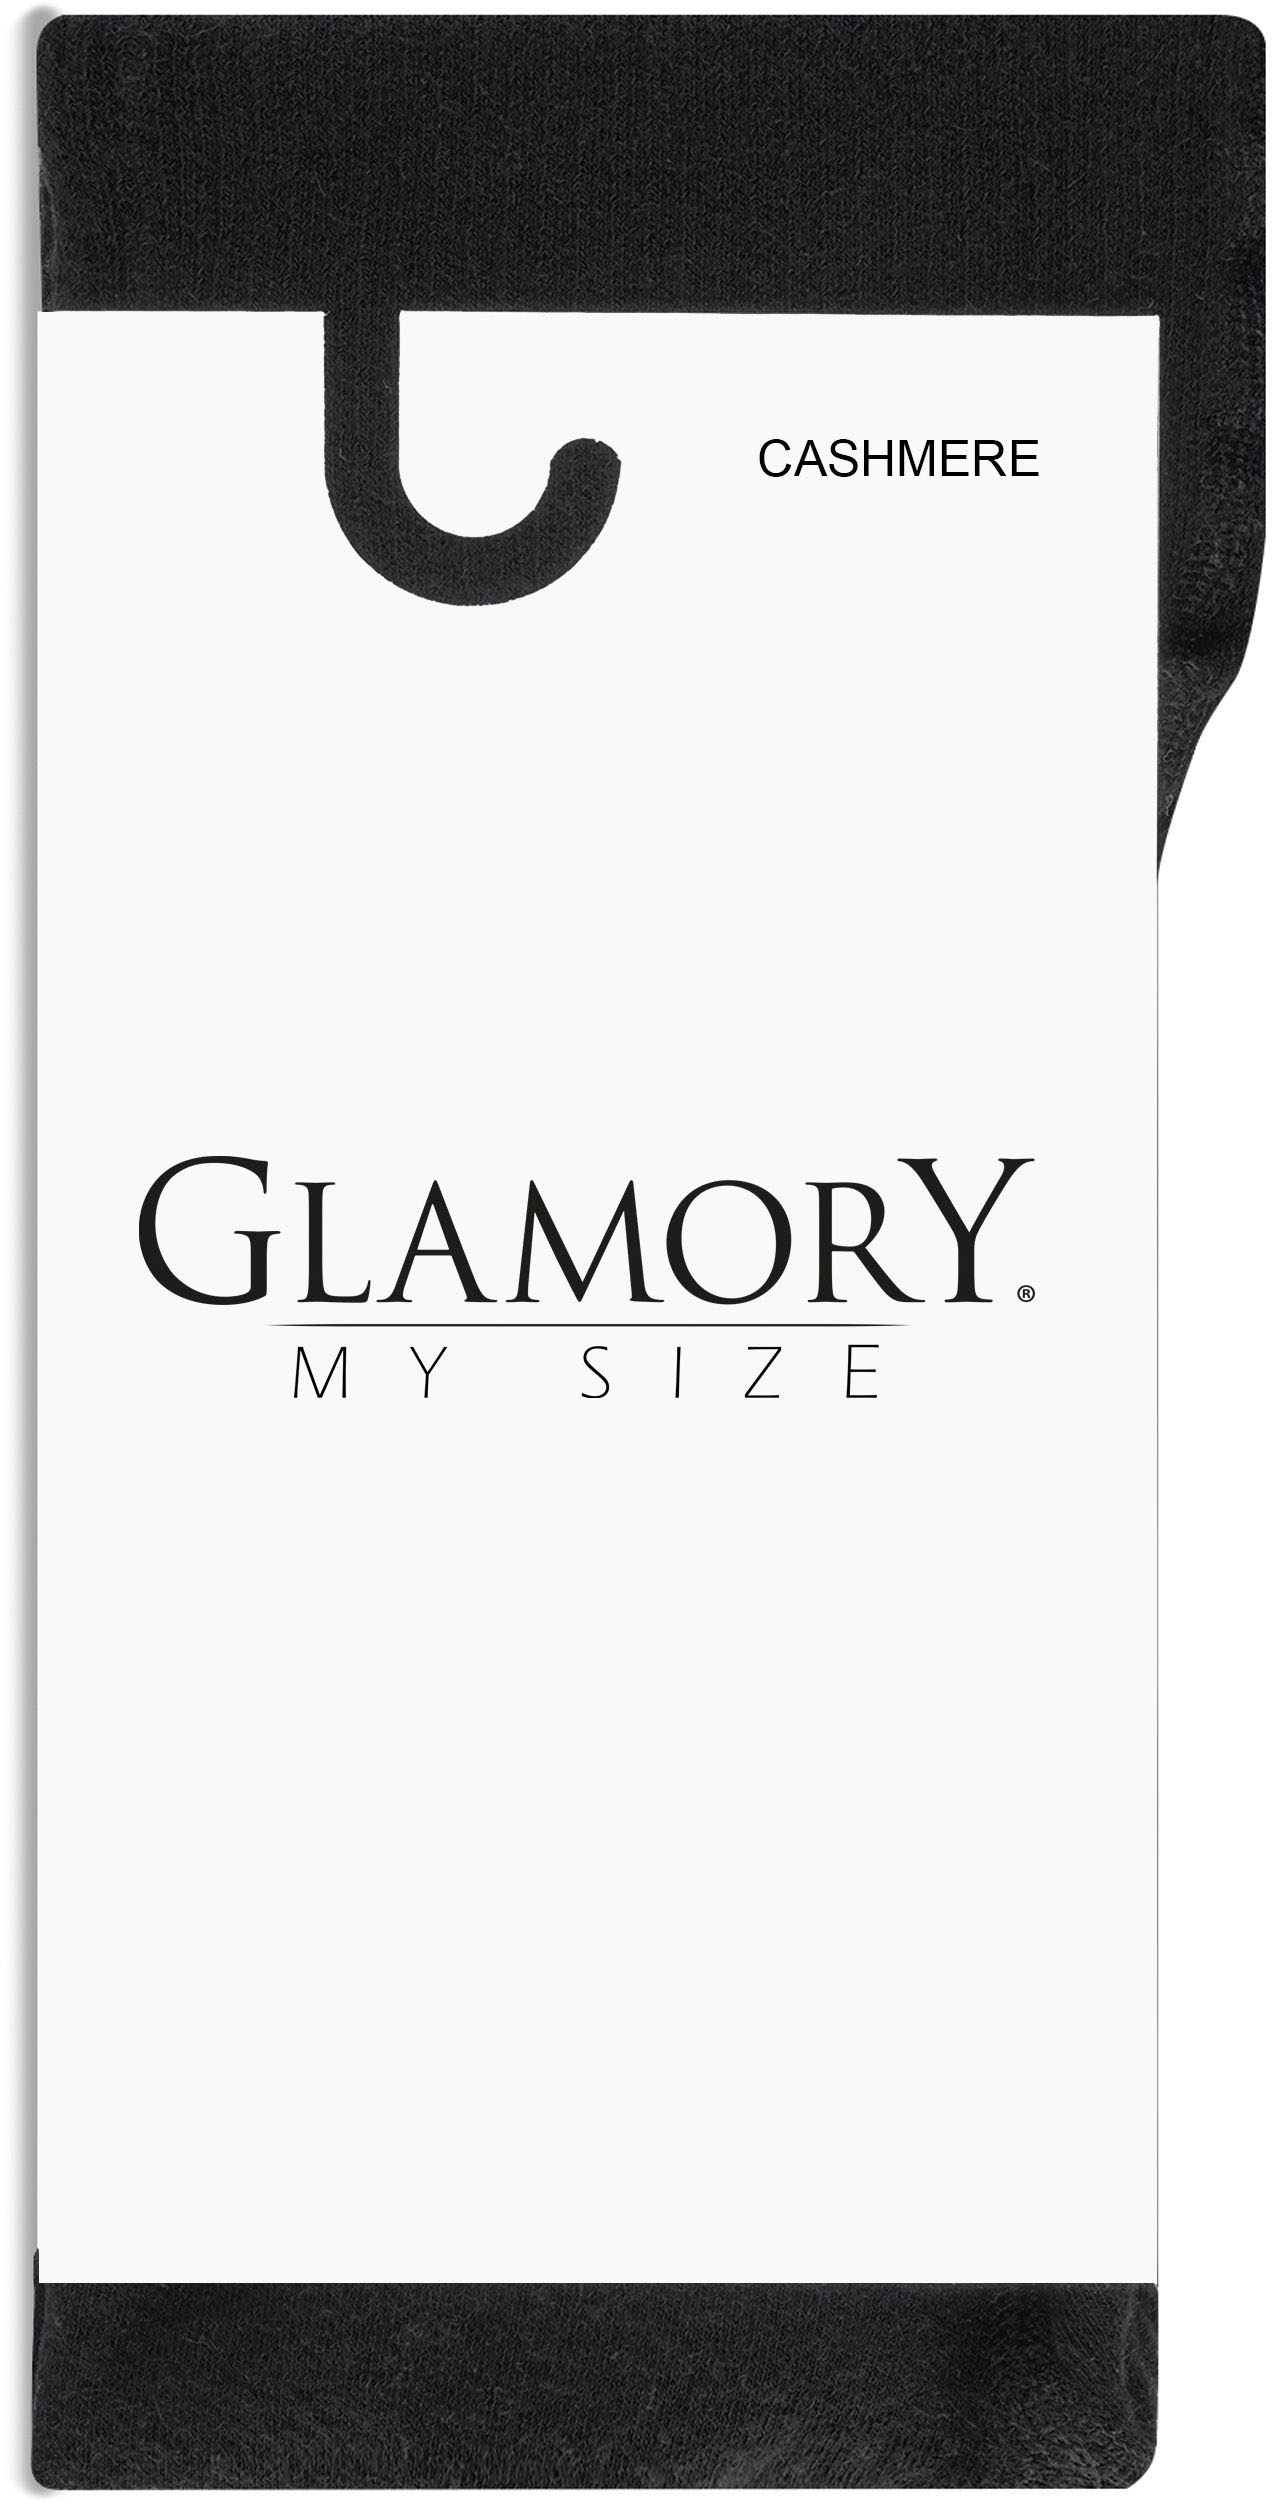 bis online Size GLAMORY Jelmoli-Versand Strickstrumpfhose, Schweiz Grösse 60/62, shoppen mit Kaschmiranteil Plus bei